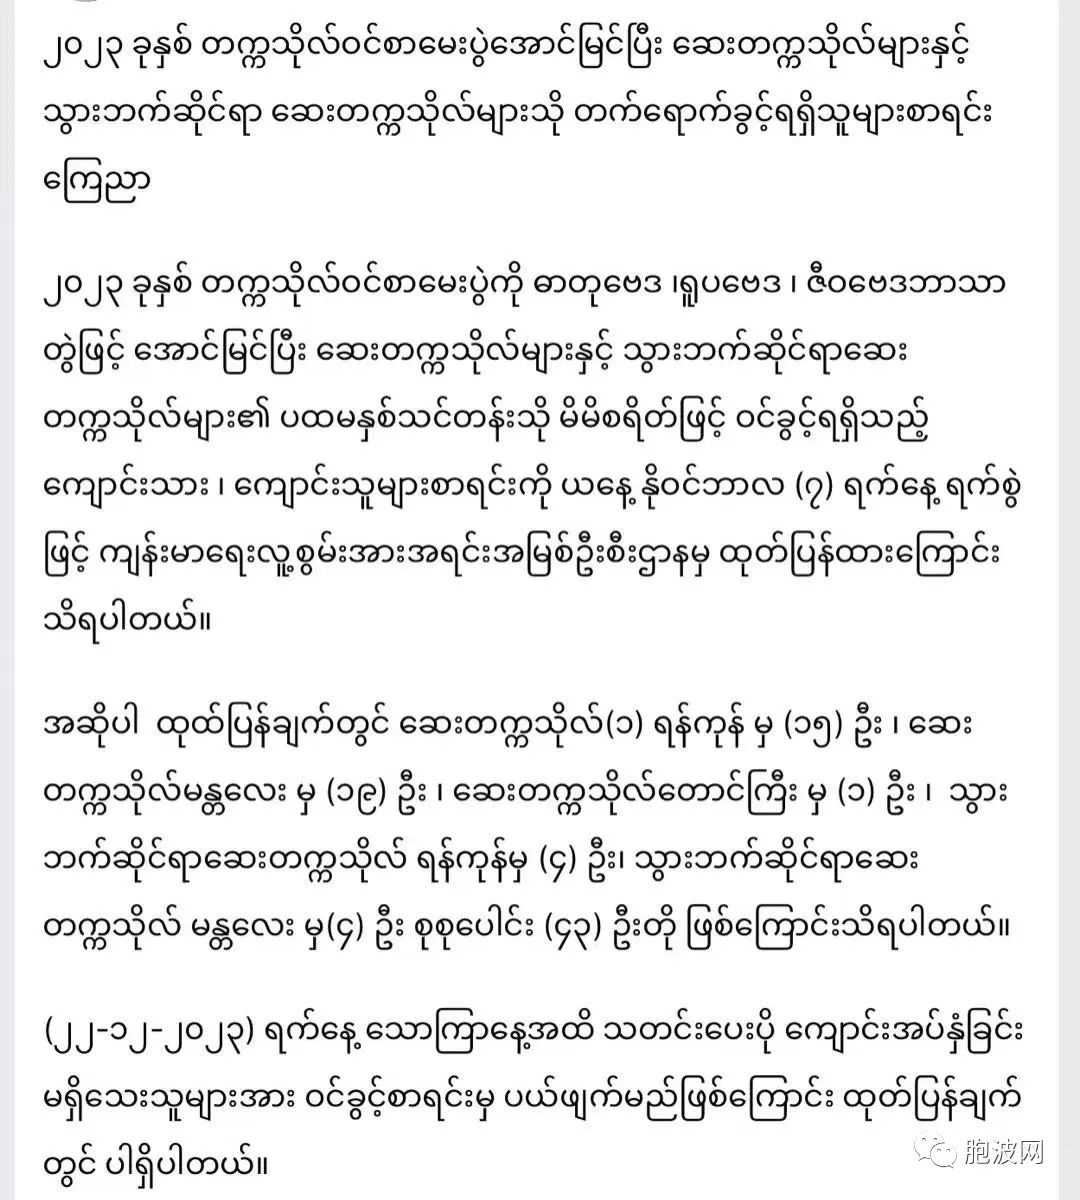 缅甸当局公布医科大学和牙科大学录取的人员名单